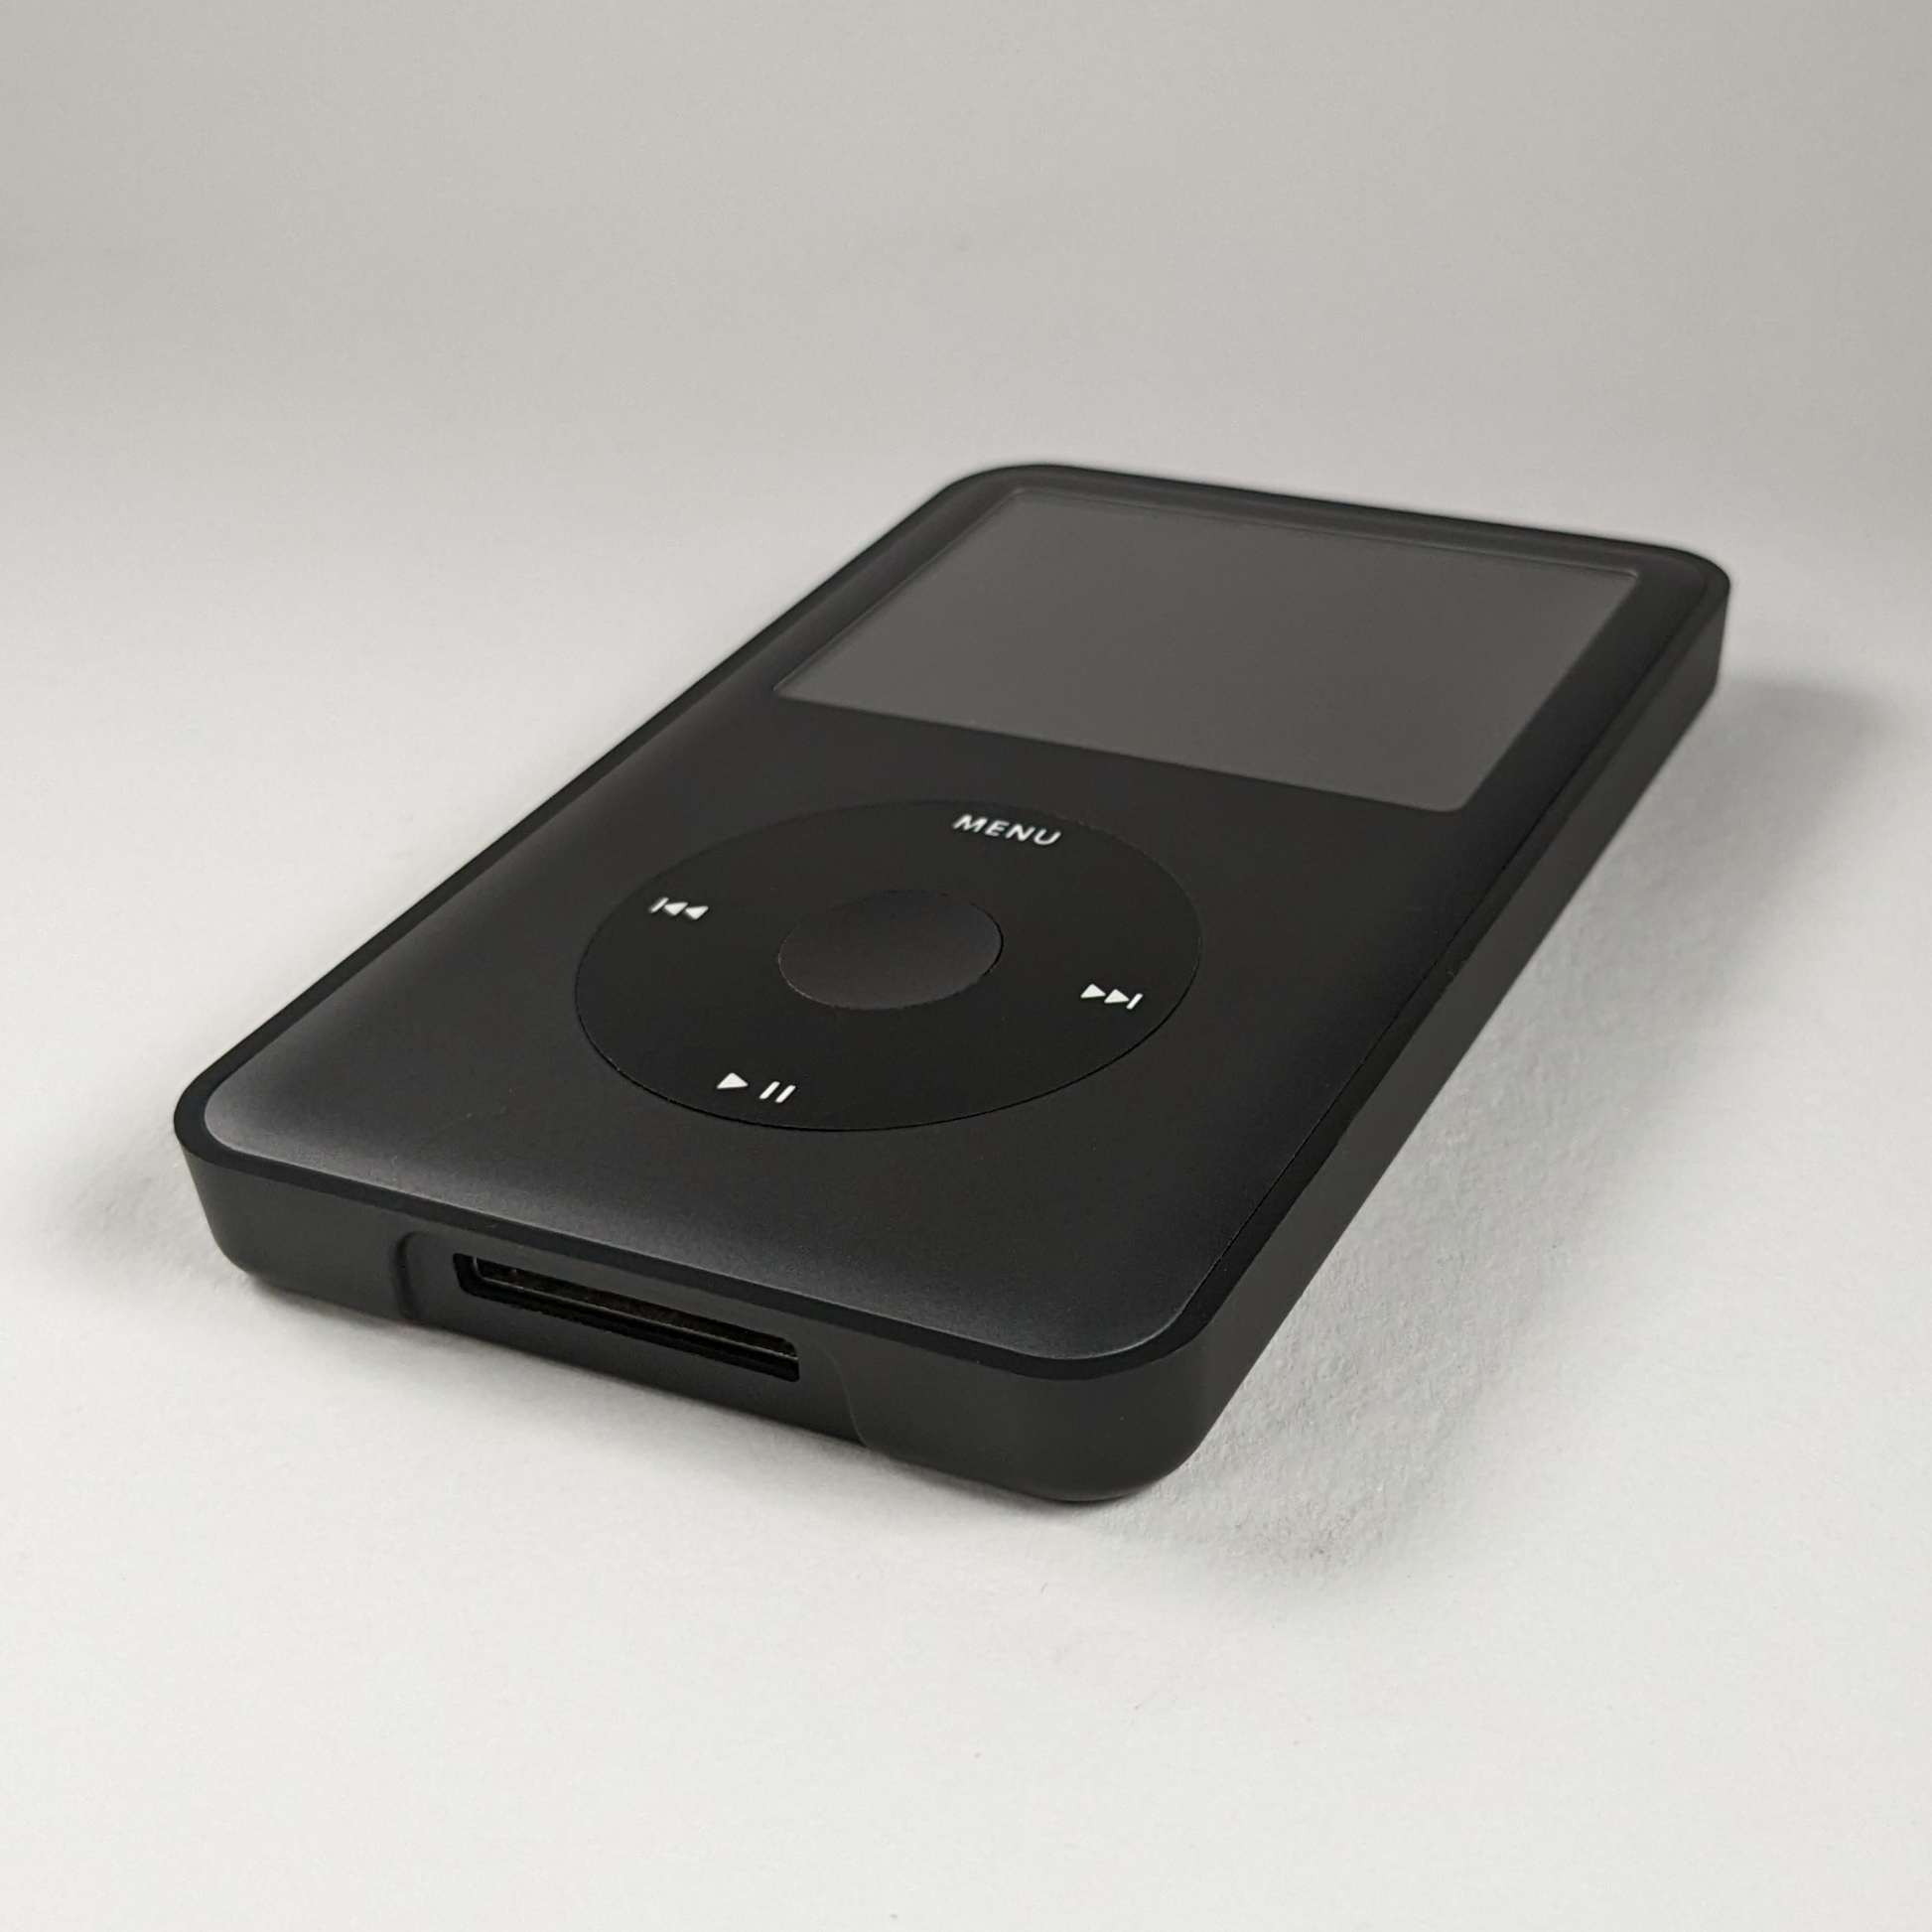 ー品販売 iPod classic 120G BlackとBluetoothのセット | www.barkat.tv